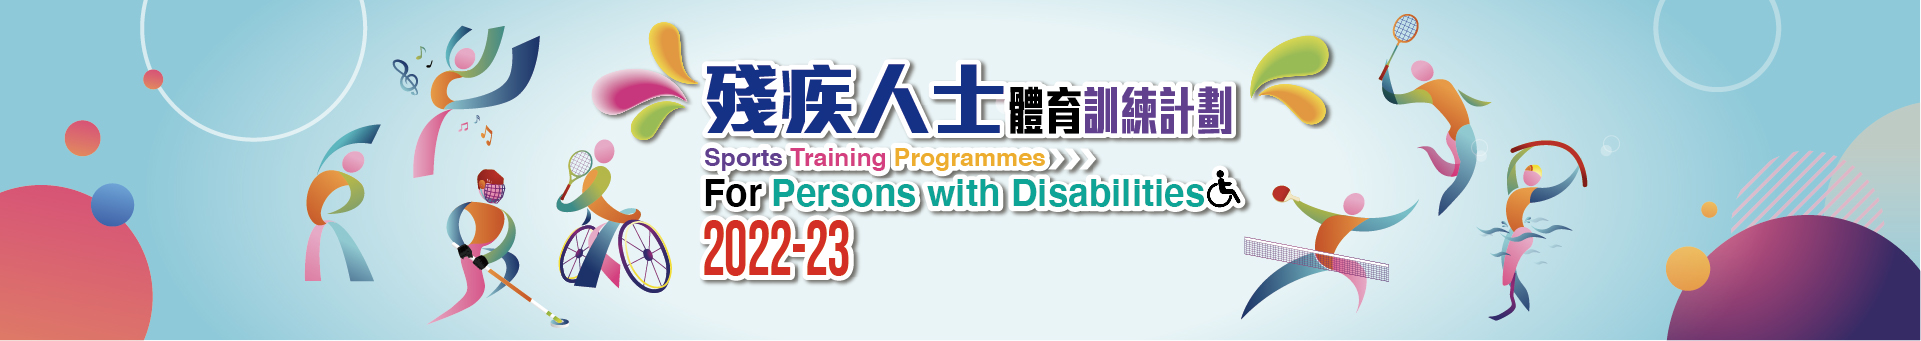 残疾人士体育训练计划2022-23